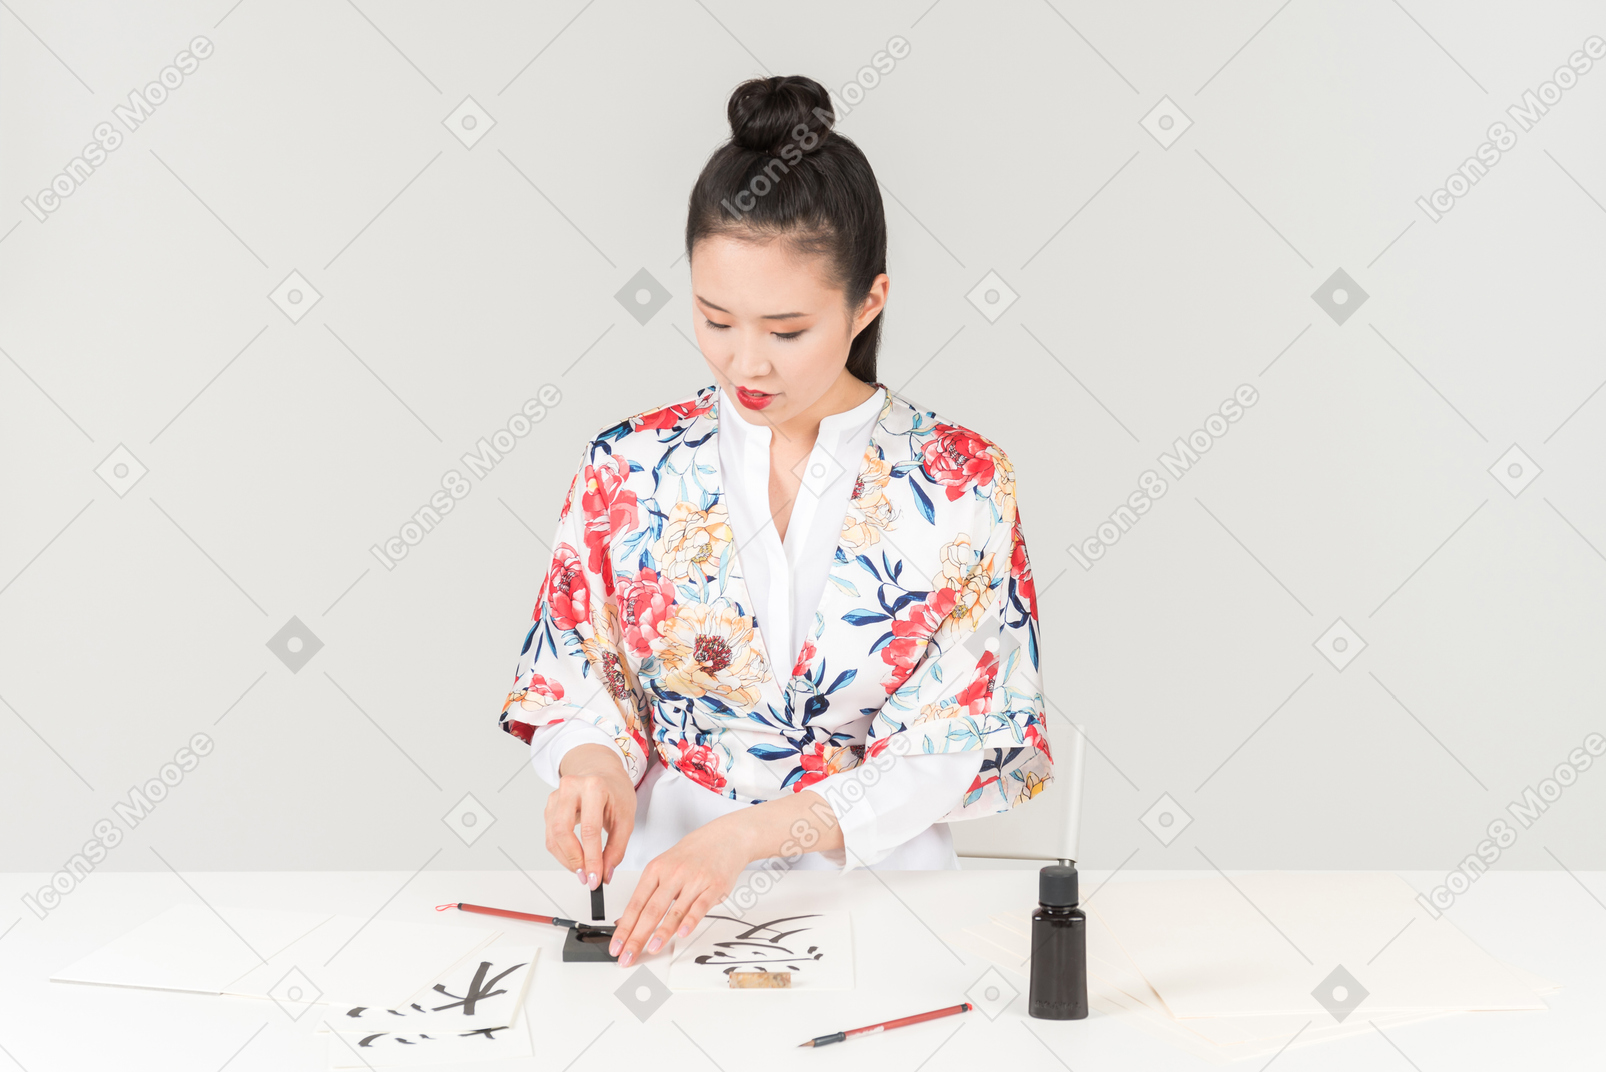 Jeune femme dans un kimono japonais coloré apprend la calligraphie en dessinant un hiéroglyphe